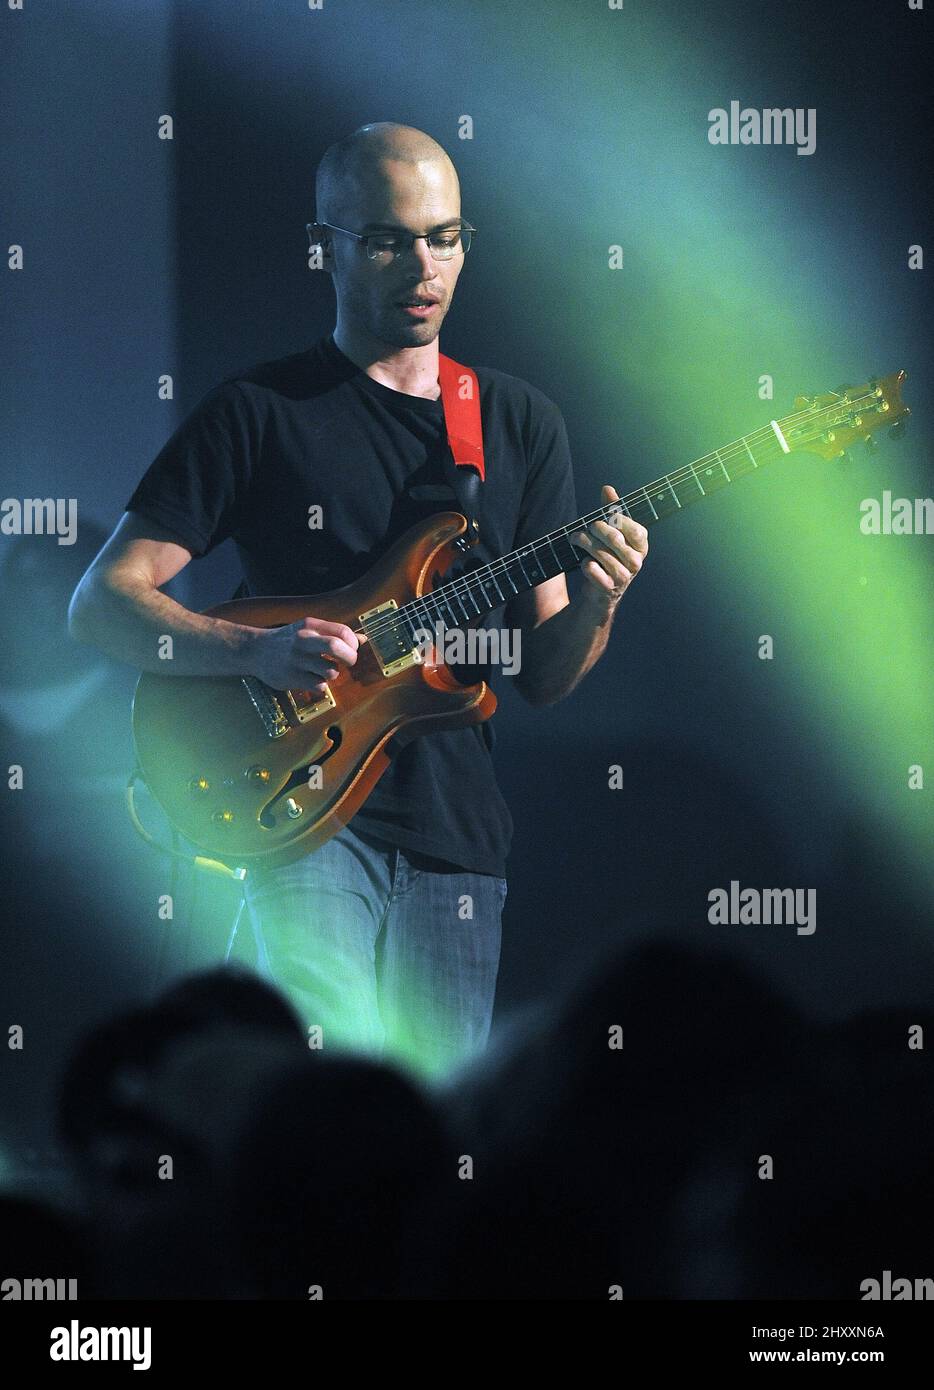 Mike Rempel della band Lotus si esibirà sul palco durante la sosta del tour del 2012 al Brooklyn Arts Center di Wilmington, NC. Foto Stock